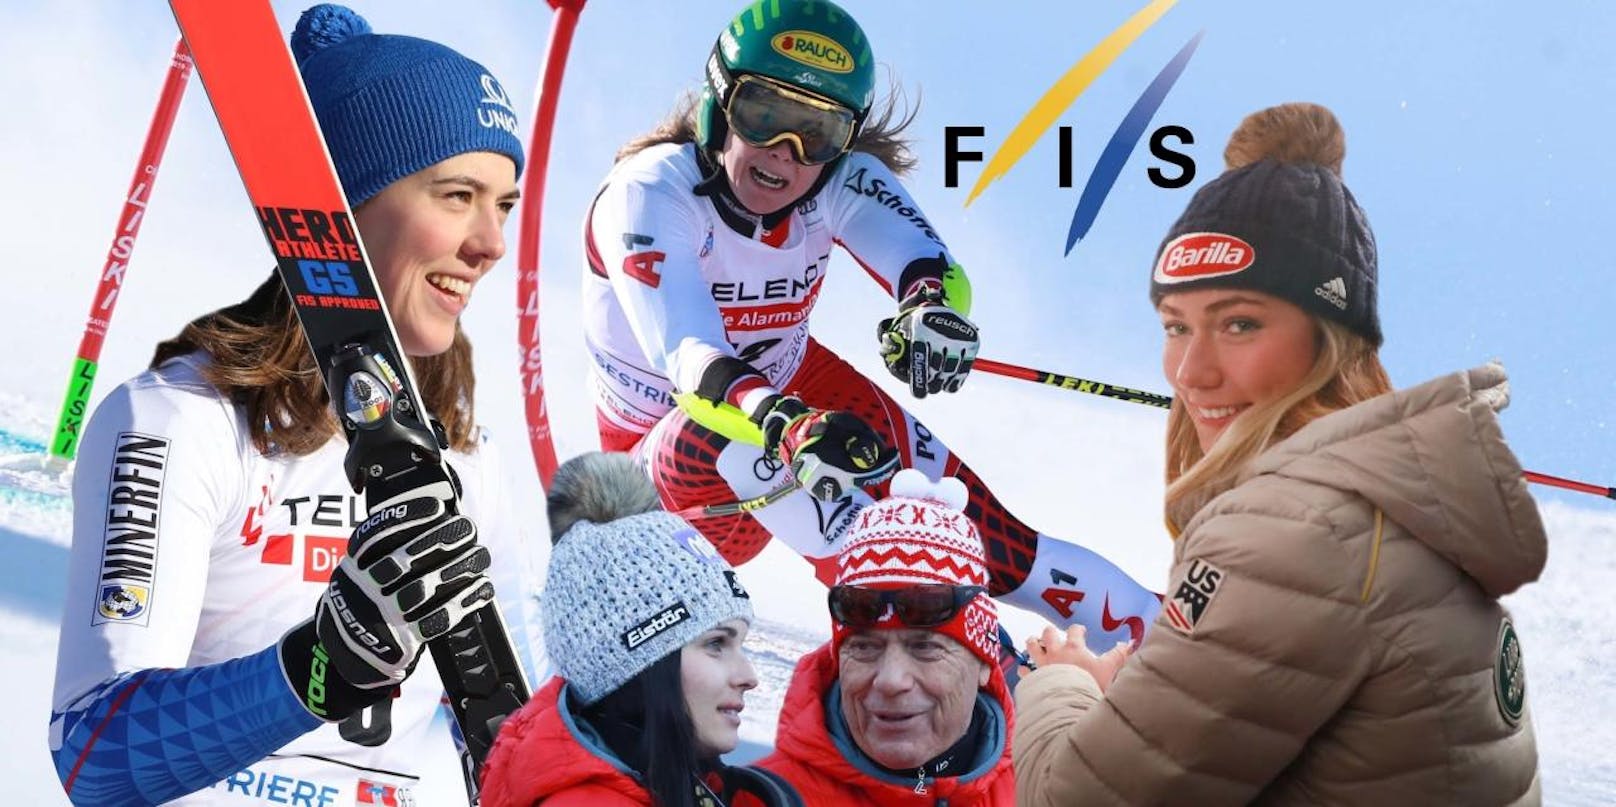 Die Damen-Ski-Saison 2019/20 liefert Woche für Woche spektakuläre Rennen und Ergebnisse. "Heute" hält den alpinen Winter in Bildern fest. Klickt euch durch den Weltcup.